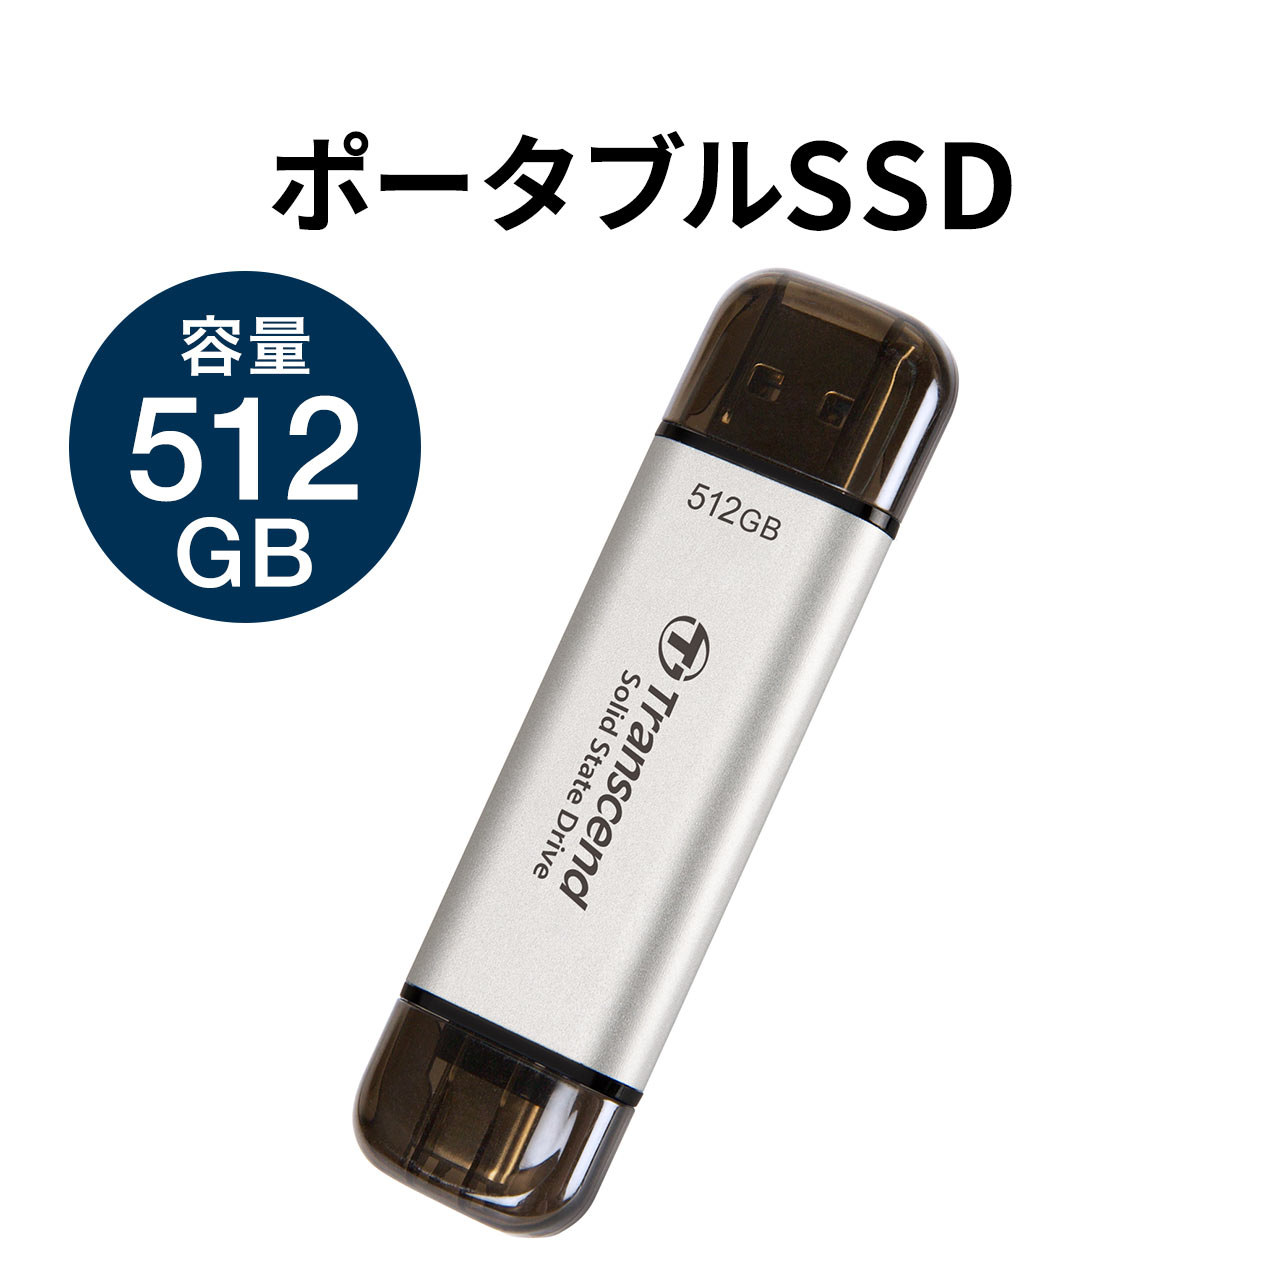 SSD 外付け 512GB ポータブルSSD スティック型 Transcend ESD310 シルバー USB TYPE-A Type-C 両対応 TS512GESD310S